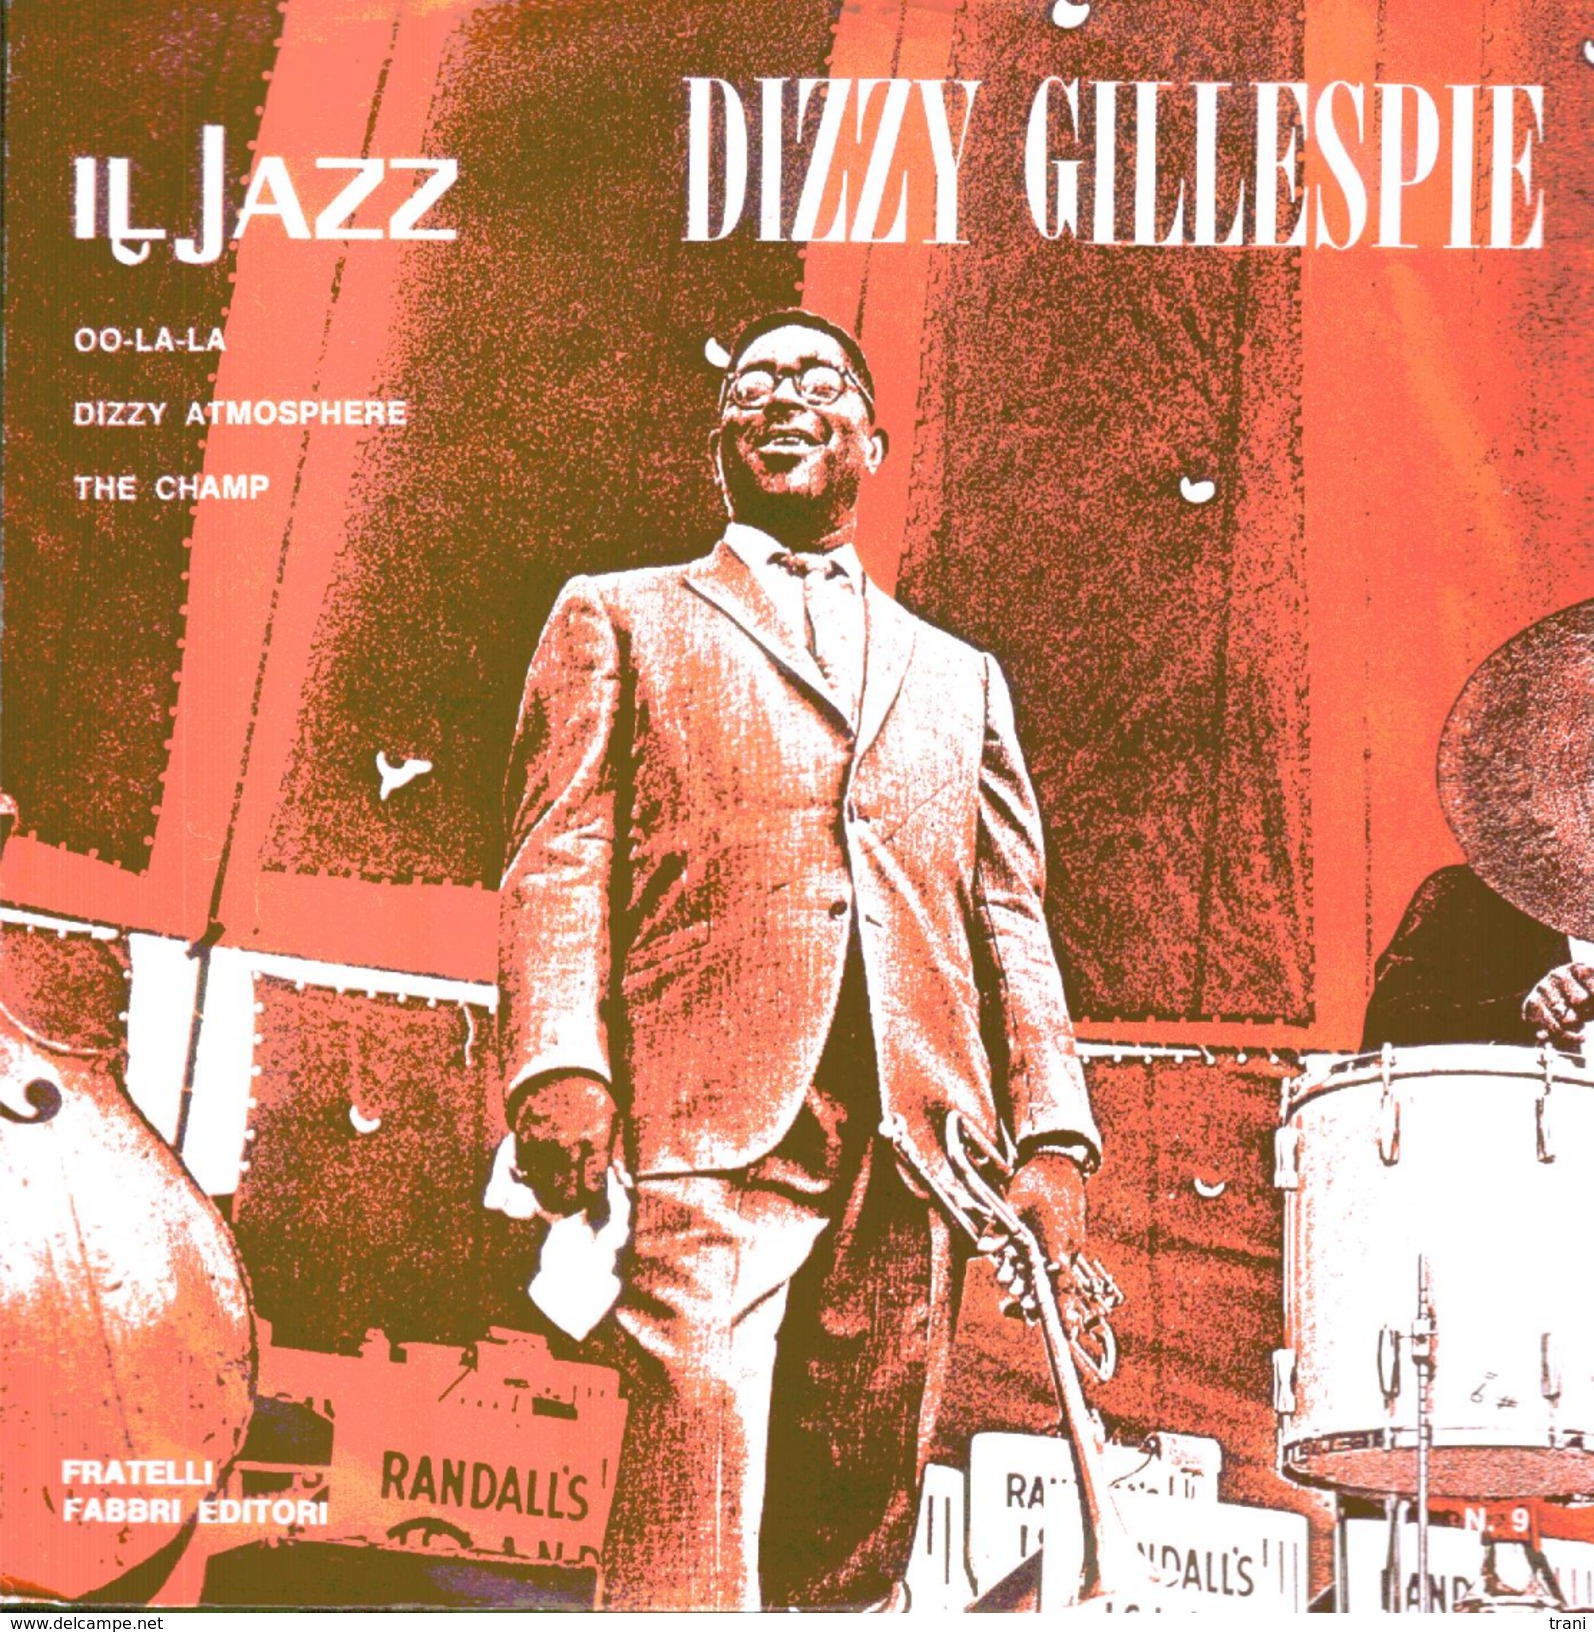 DIZZY GILLESPIE - Oo-la-la - Dizzy Atmosphere - The Champ = - Jazz